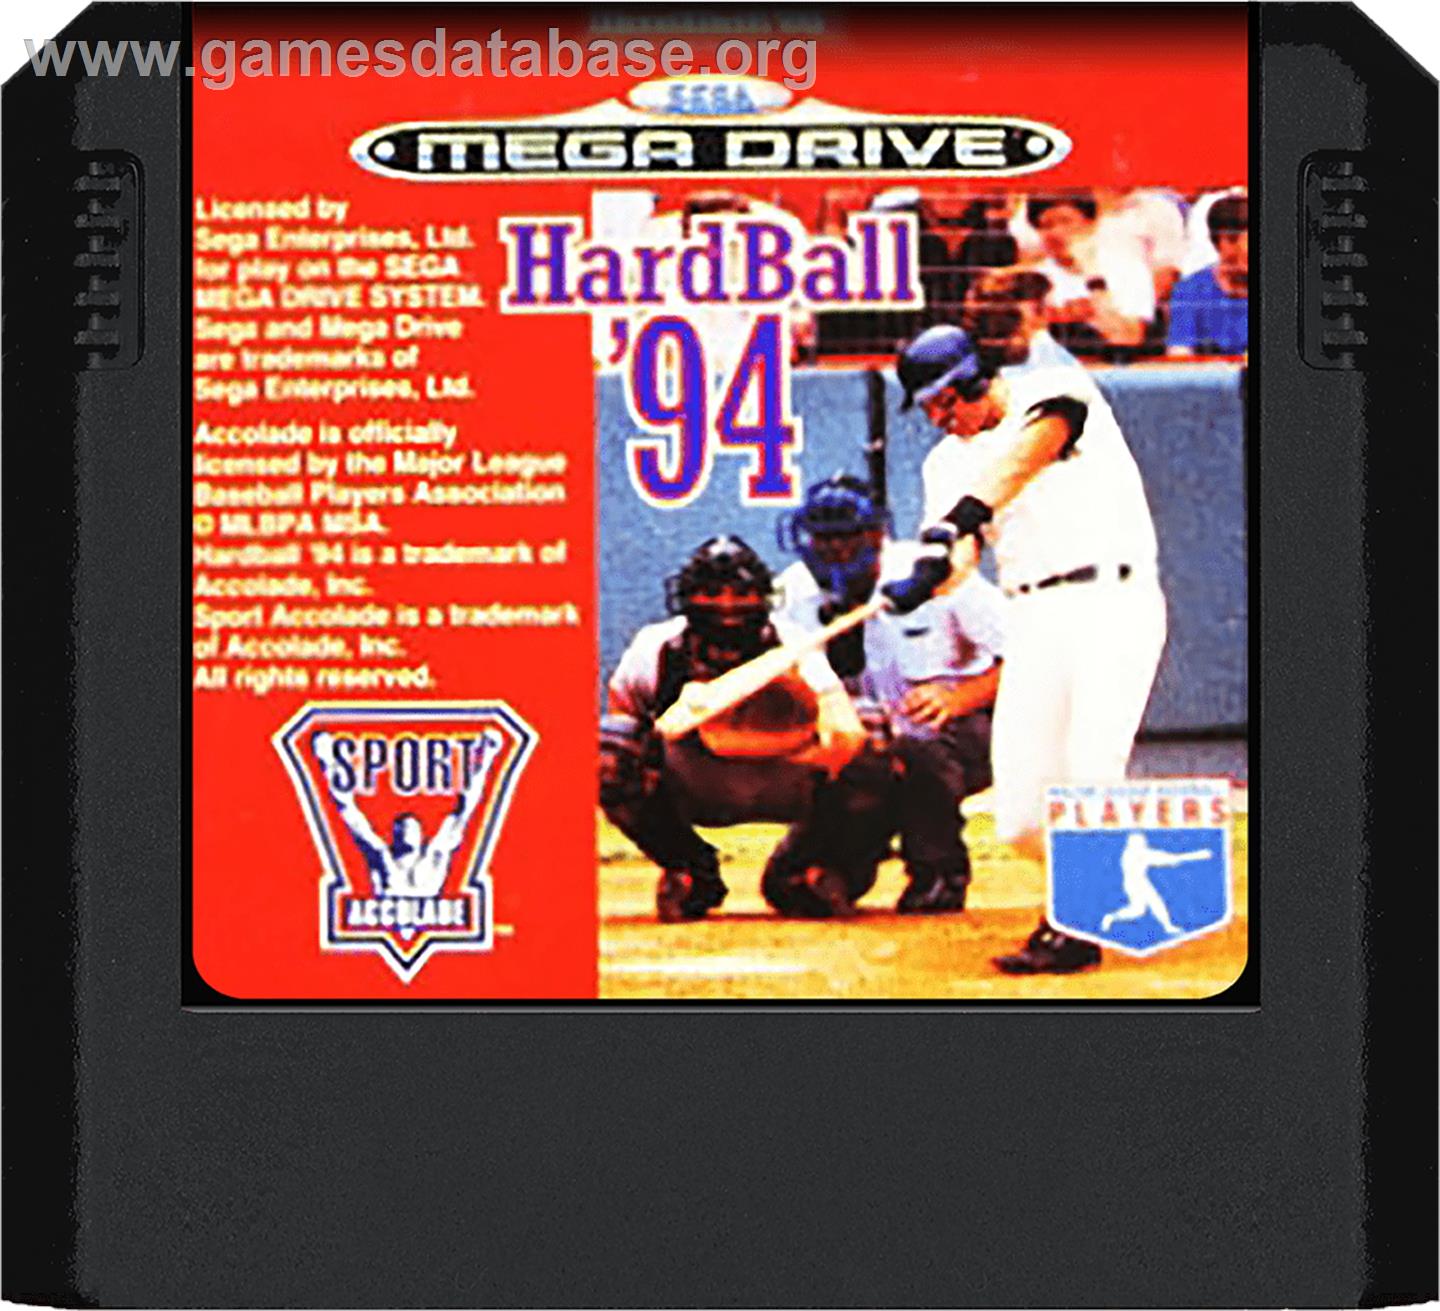 HardBall 4 - Sega Genesis - Artwork - Cartridge